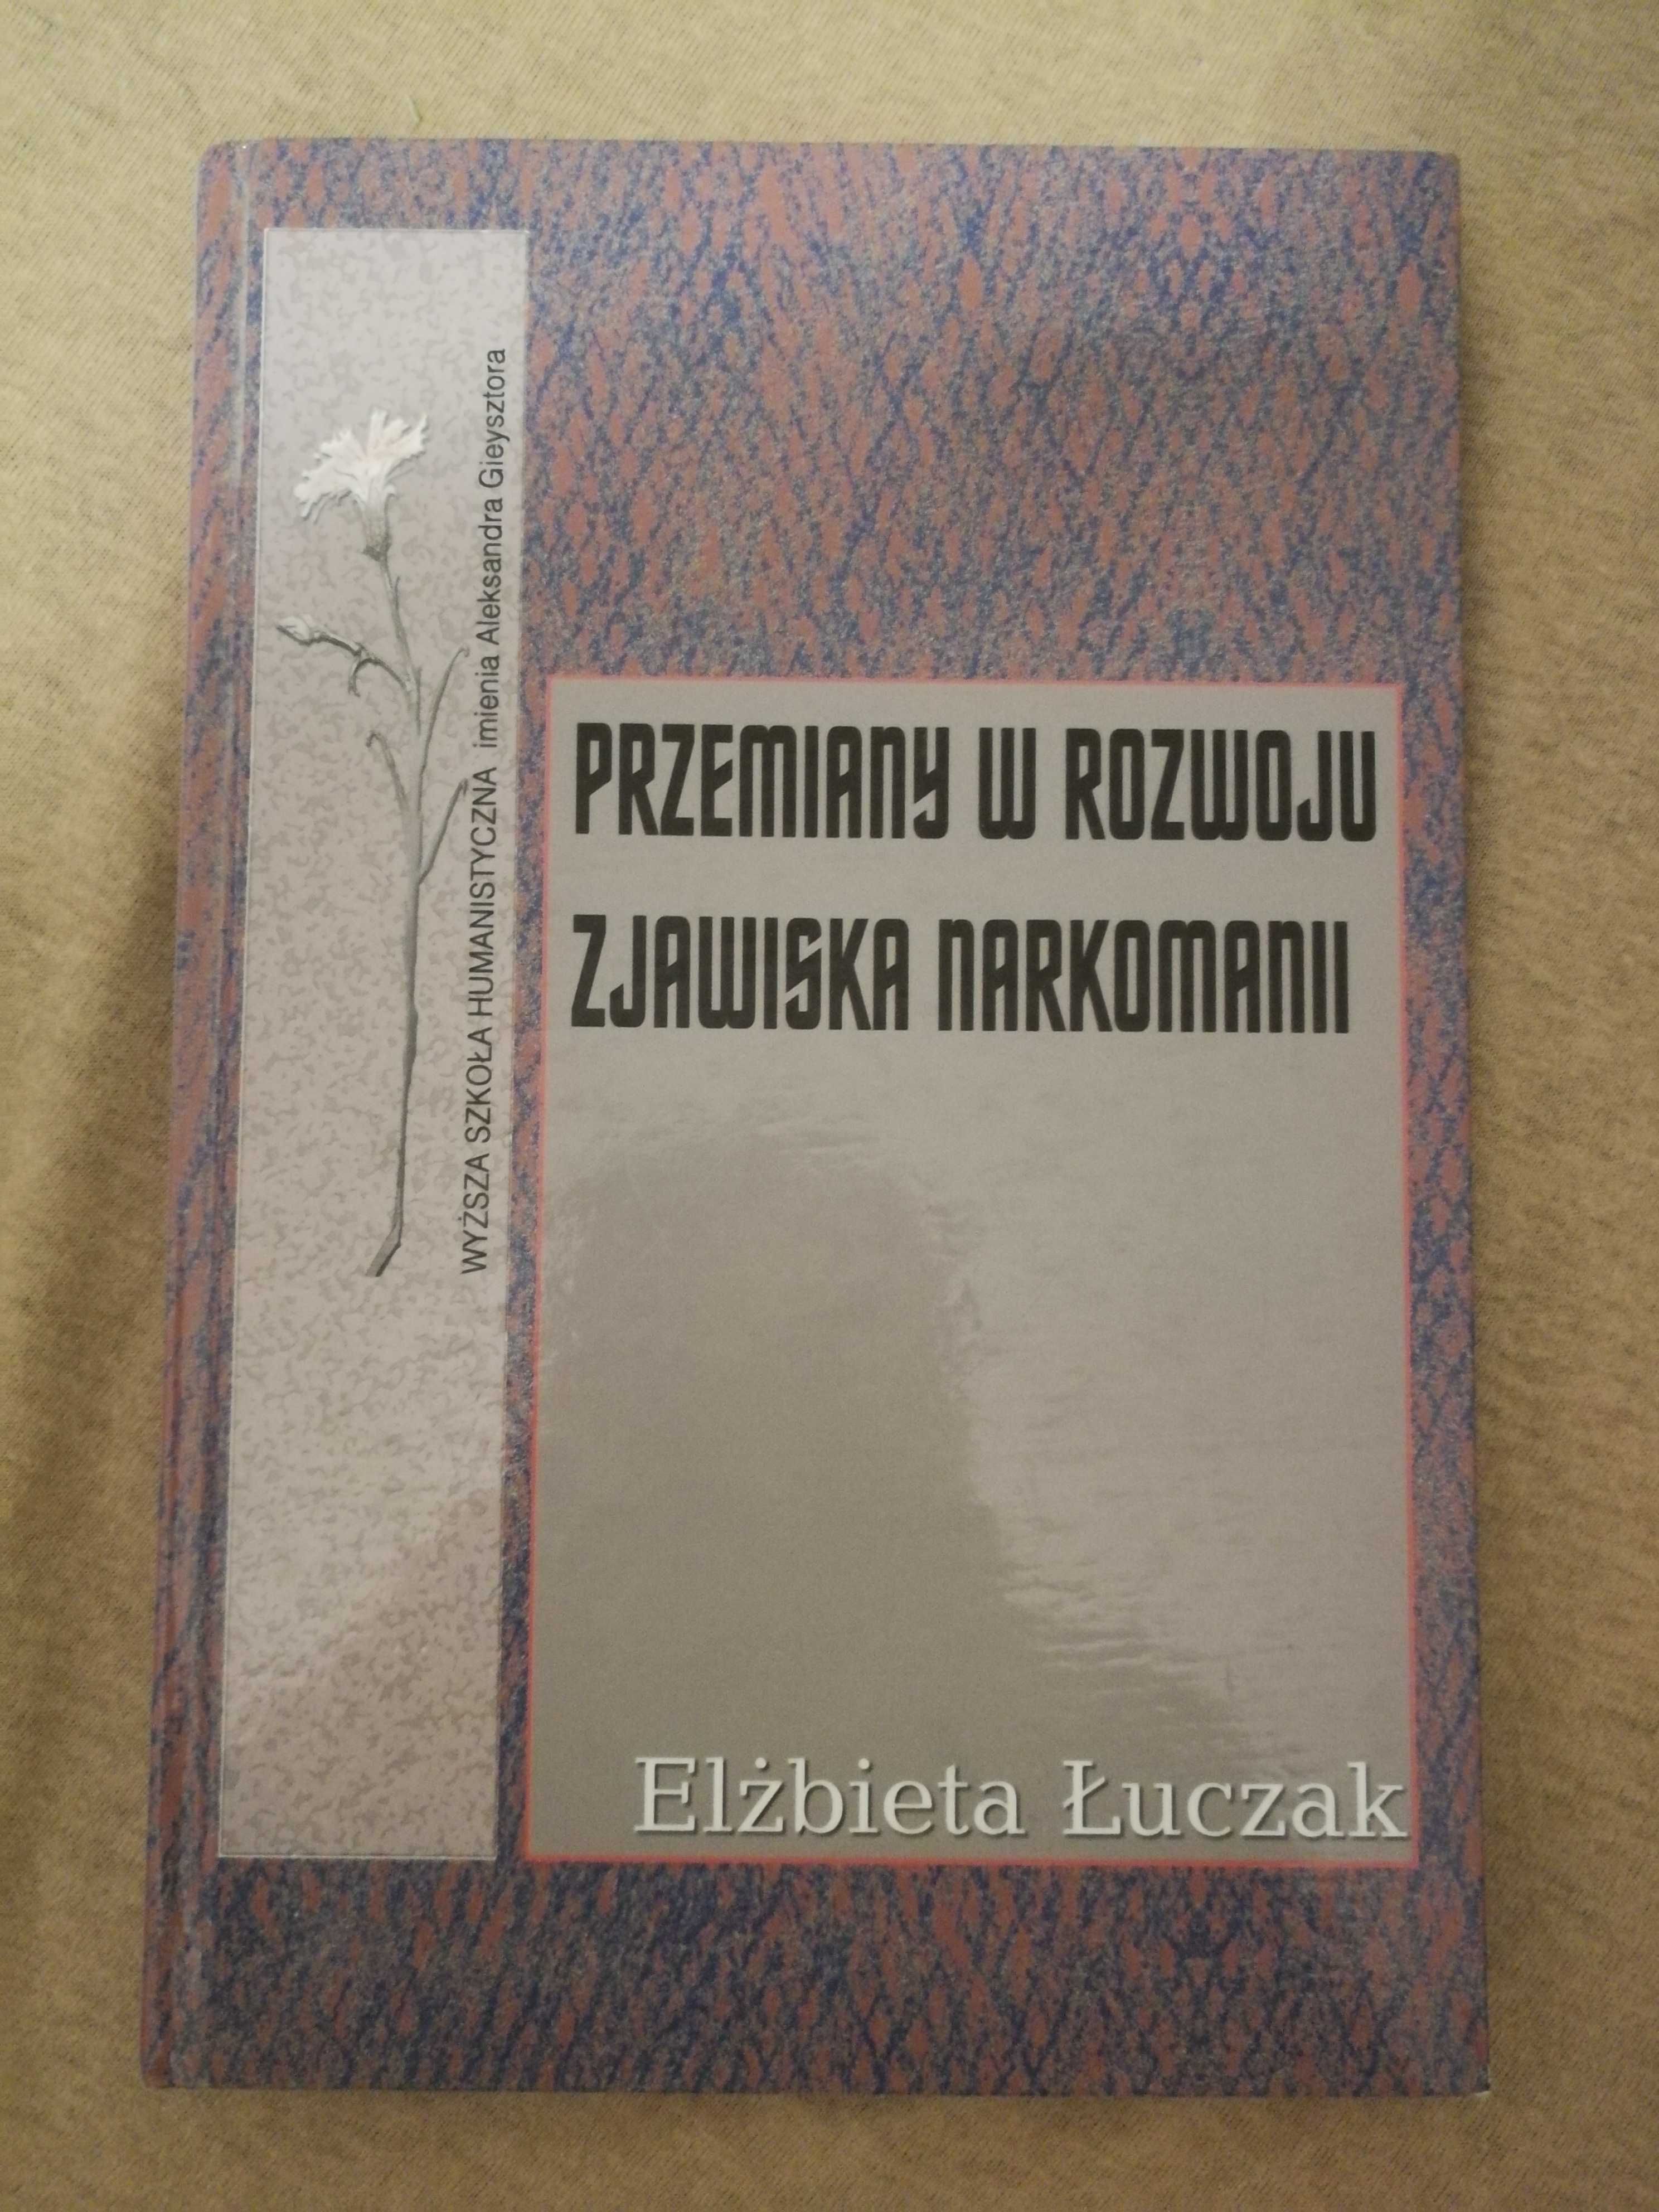 E. Łuczak "Przemiany w rozwoju zjawiska narkomanii"